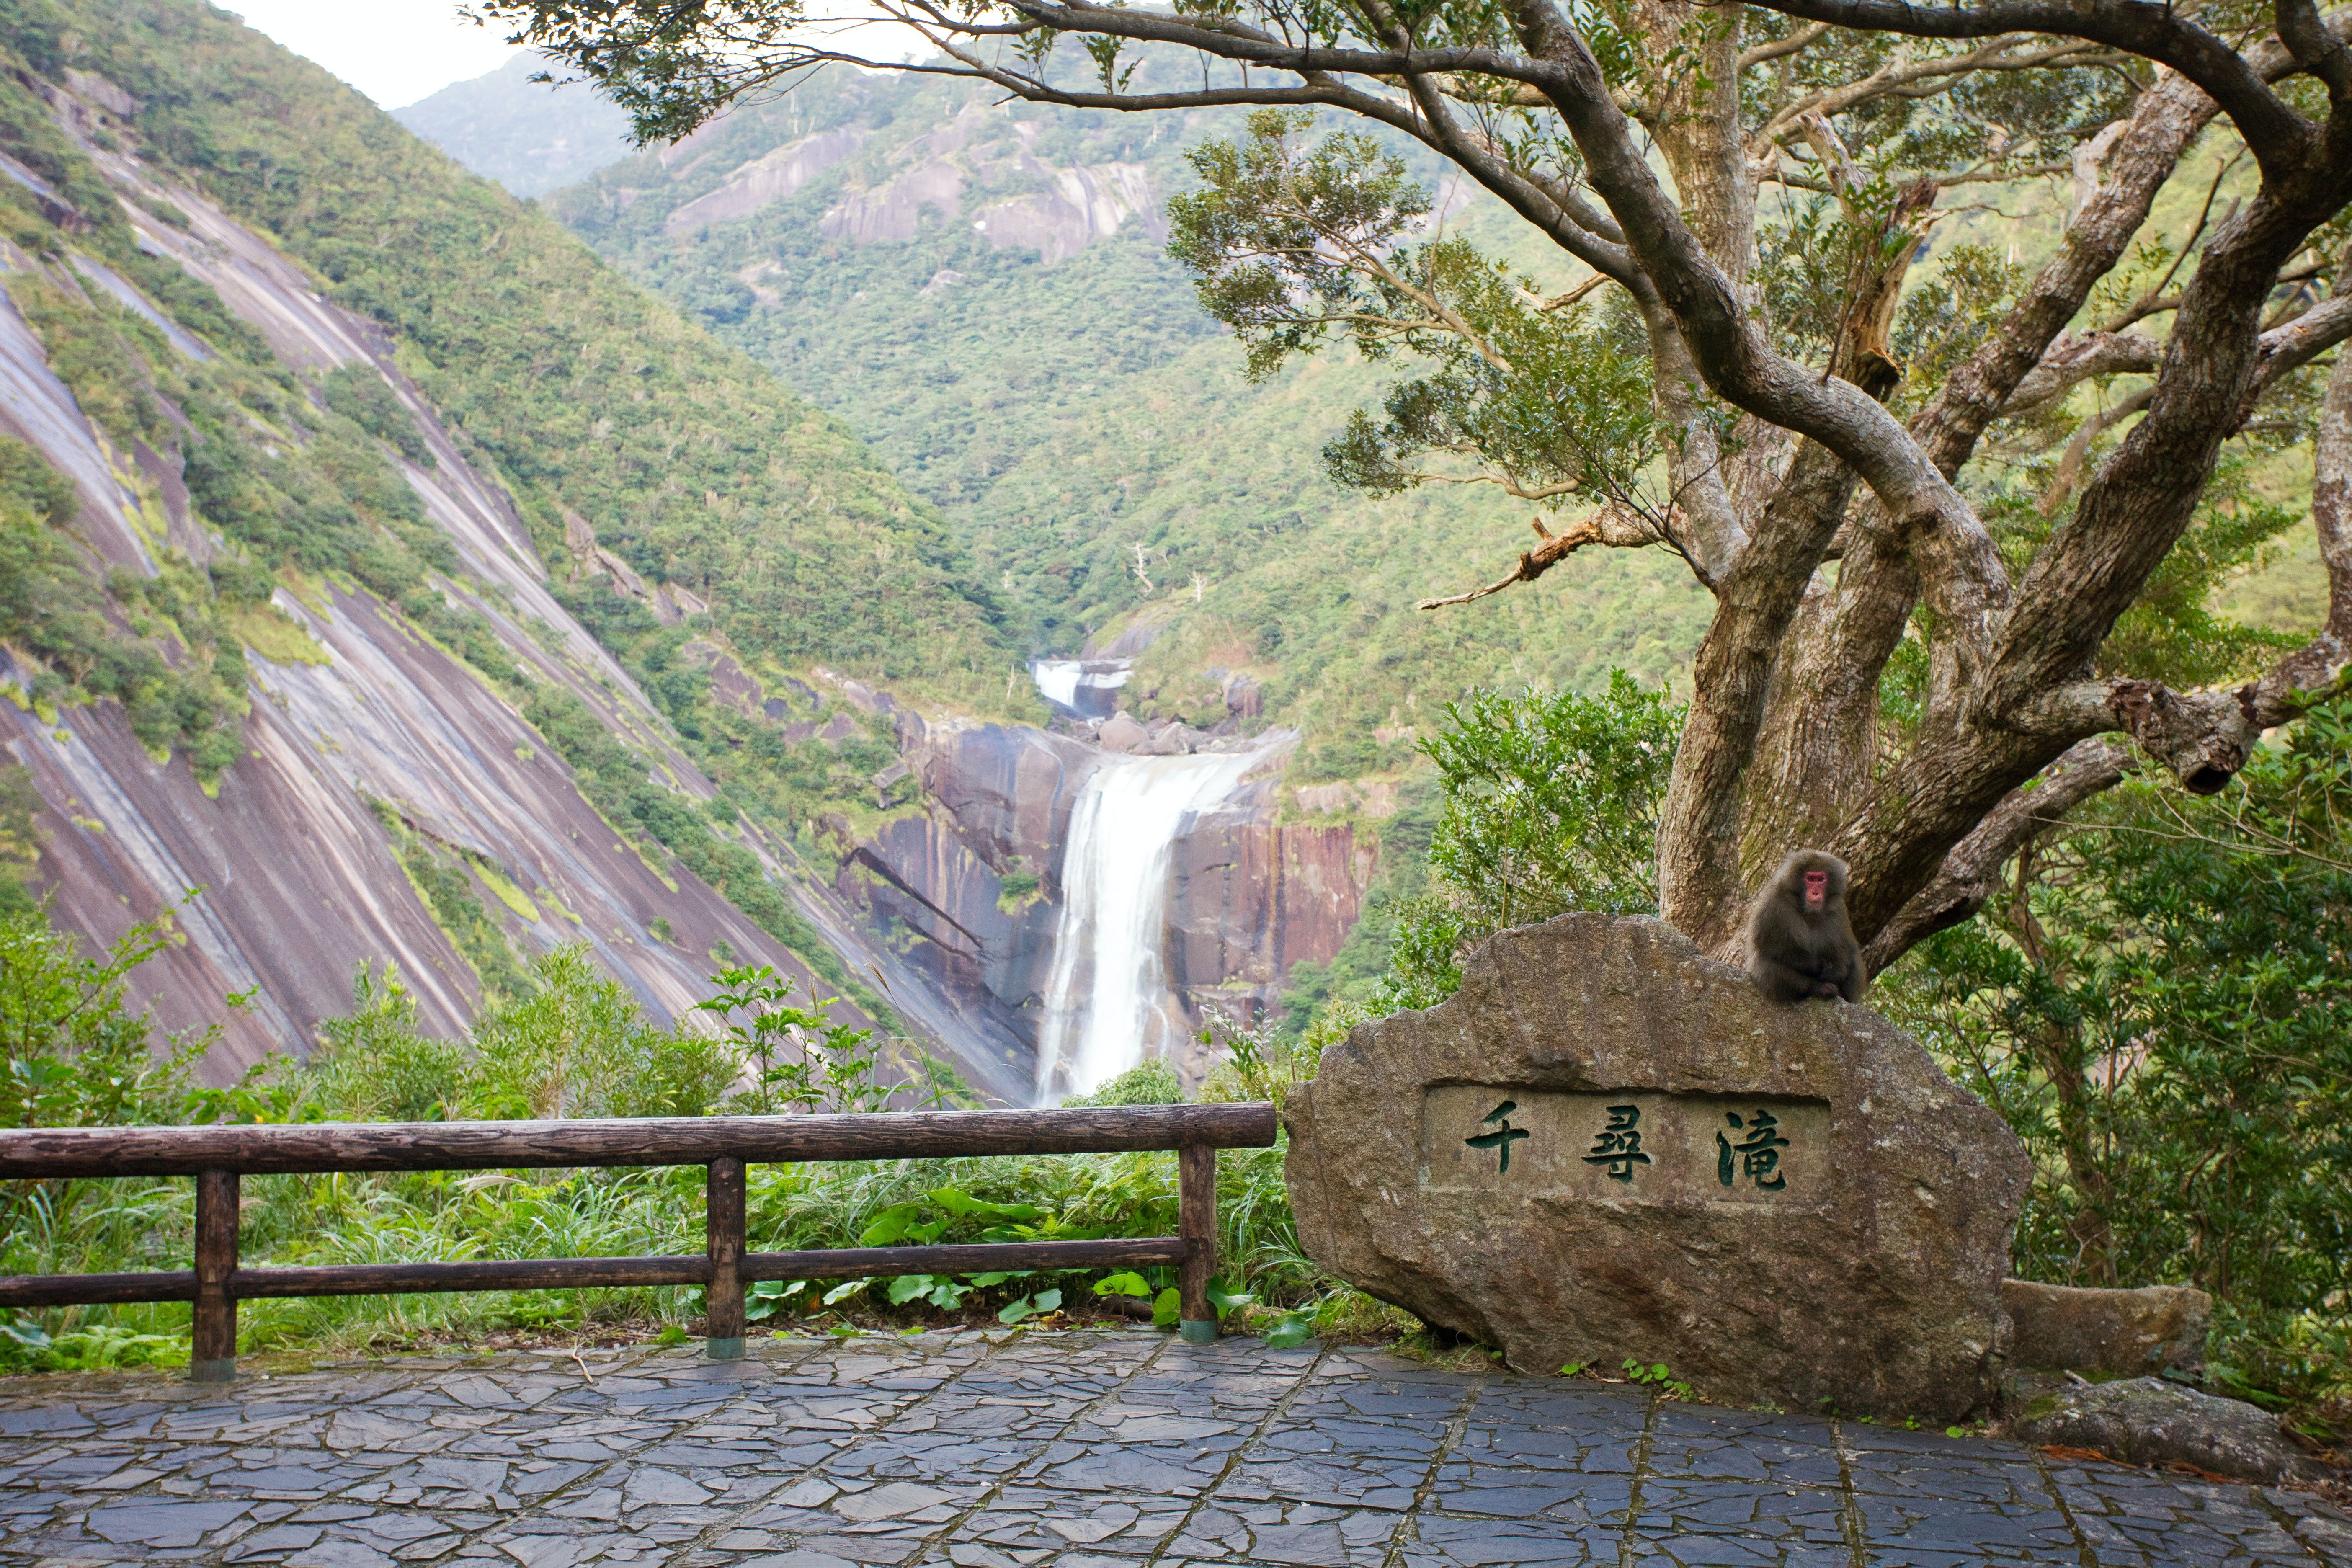 Macaco senta-se em uma rocha em frente a uma cachoeira e uma vegetação luxuriante 